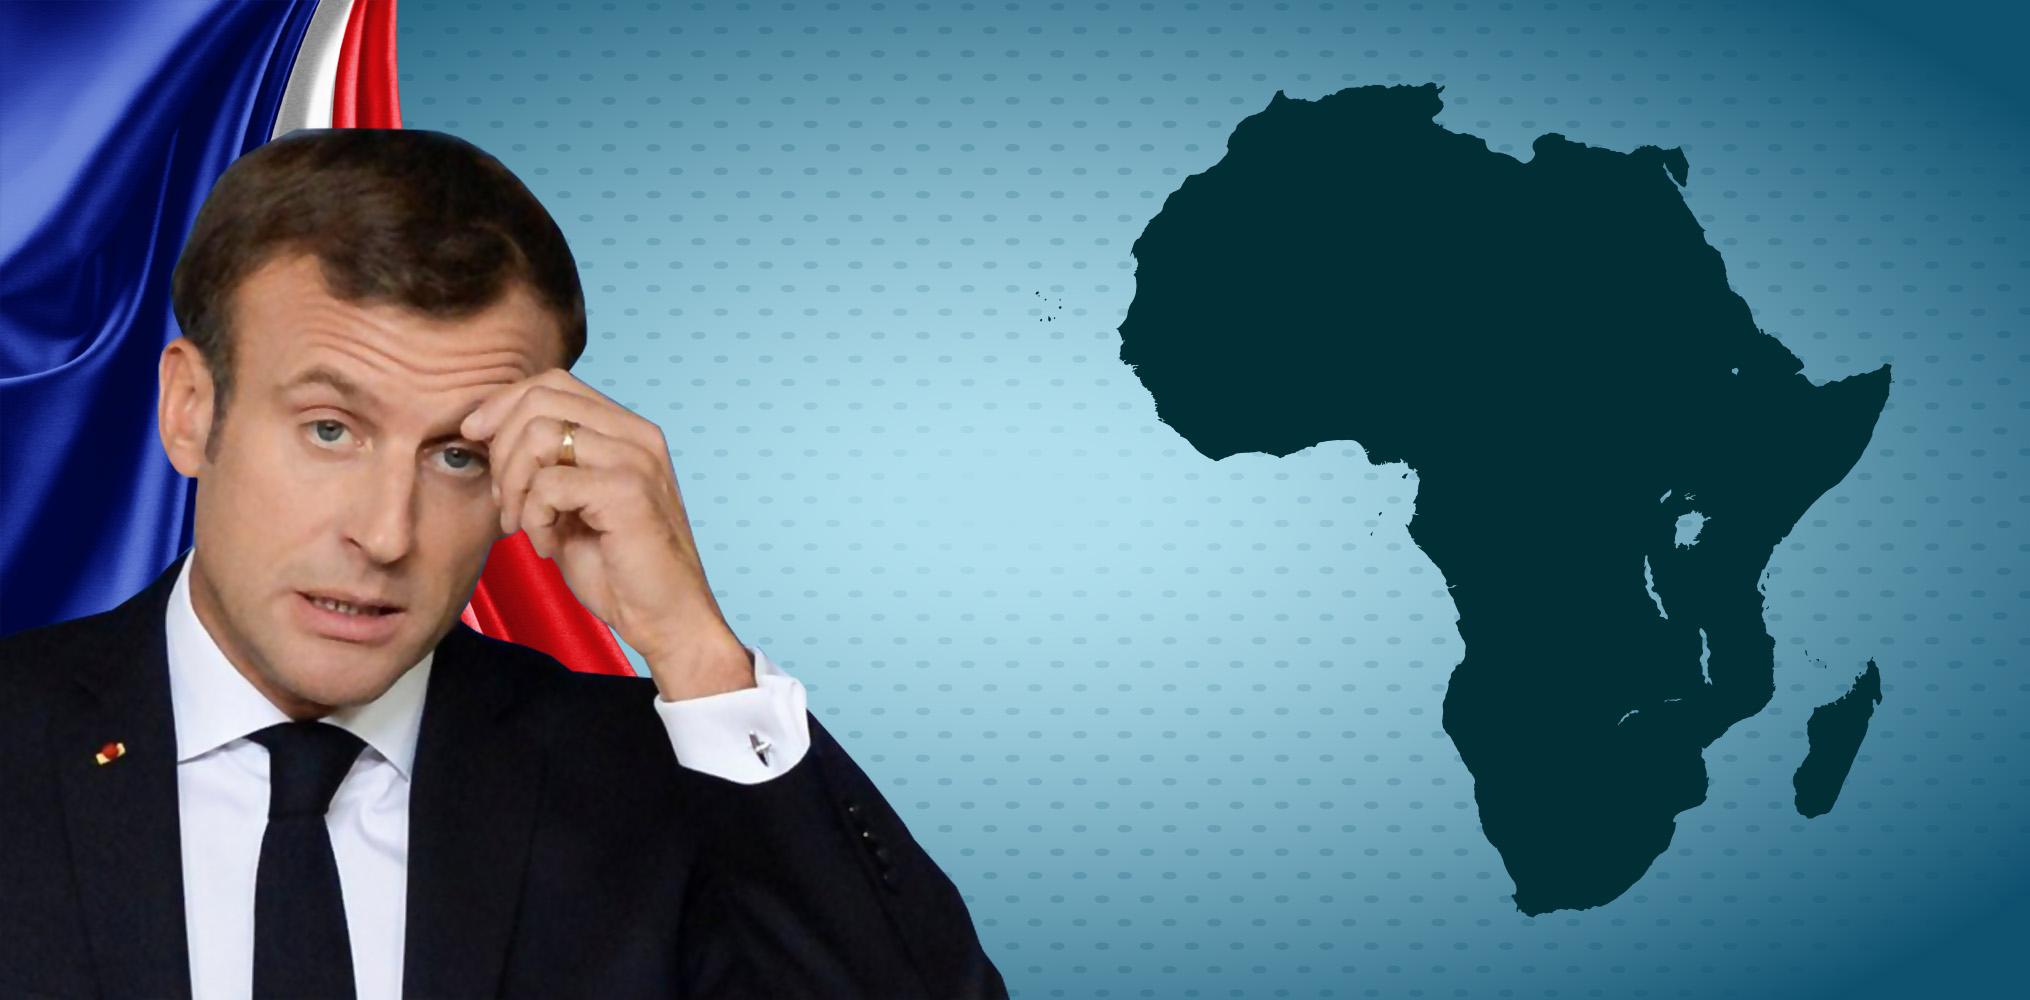 دلالات تصاعد الدعاية المضادة لفرنسا في الساحل الأفريقي